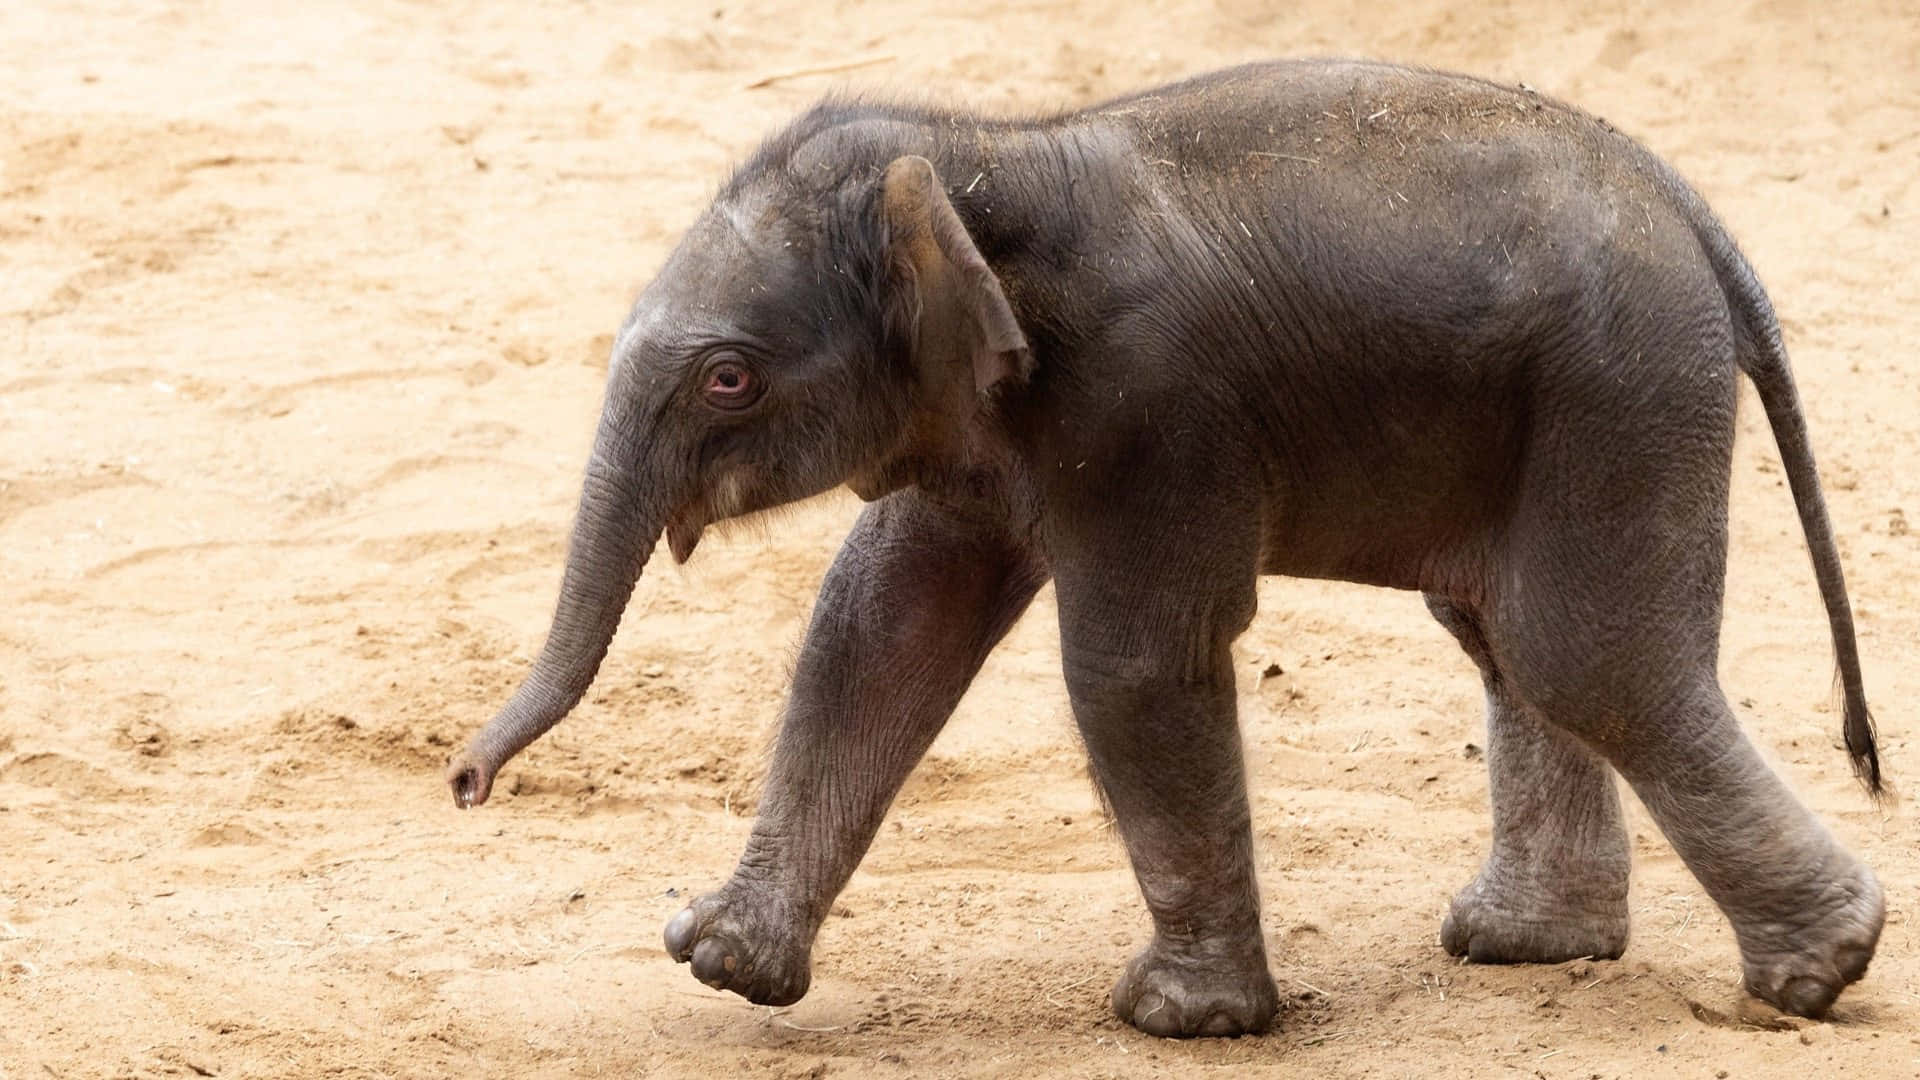 Sötbild På En Baby Elephant.